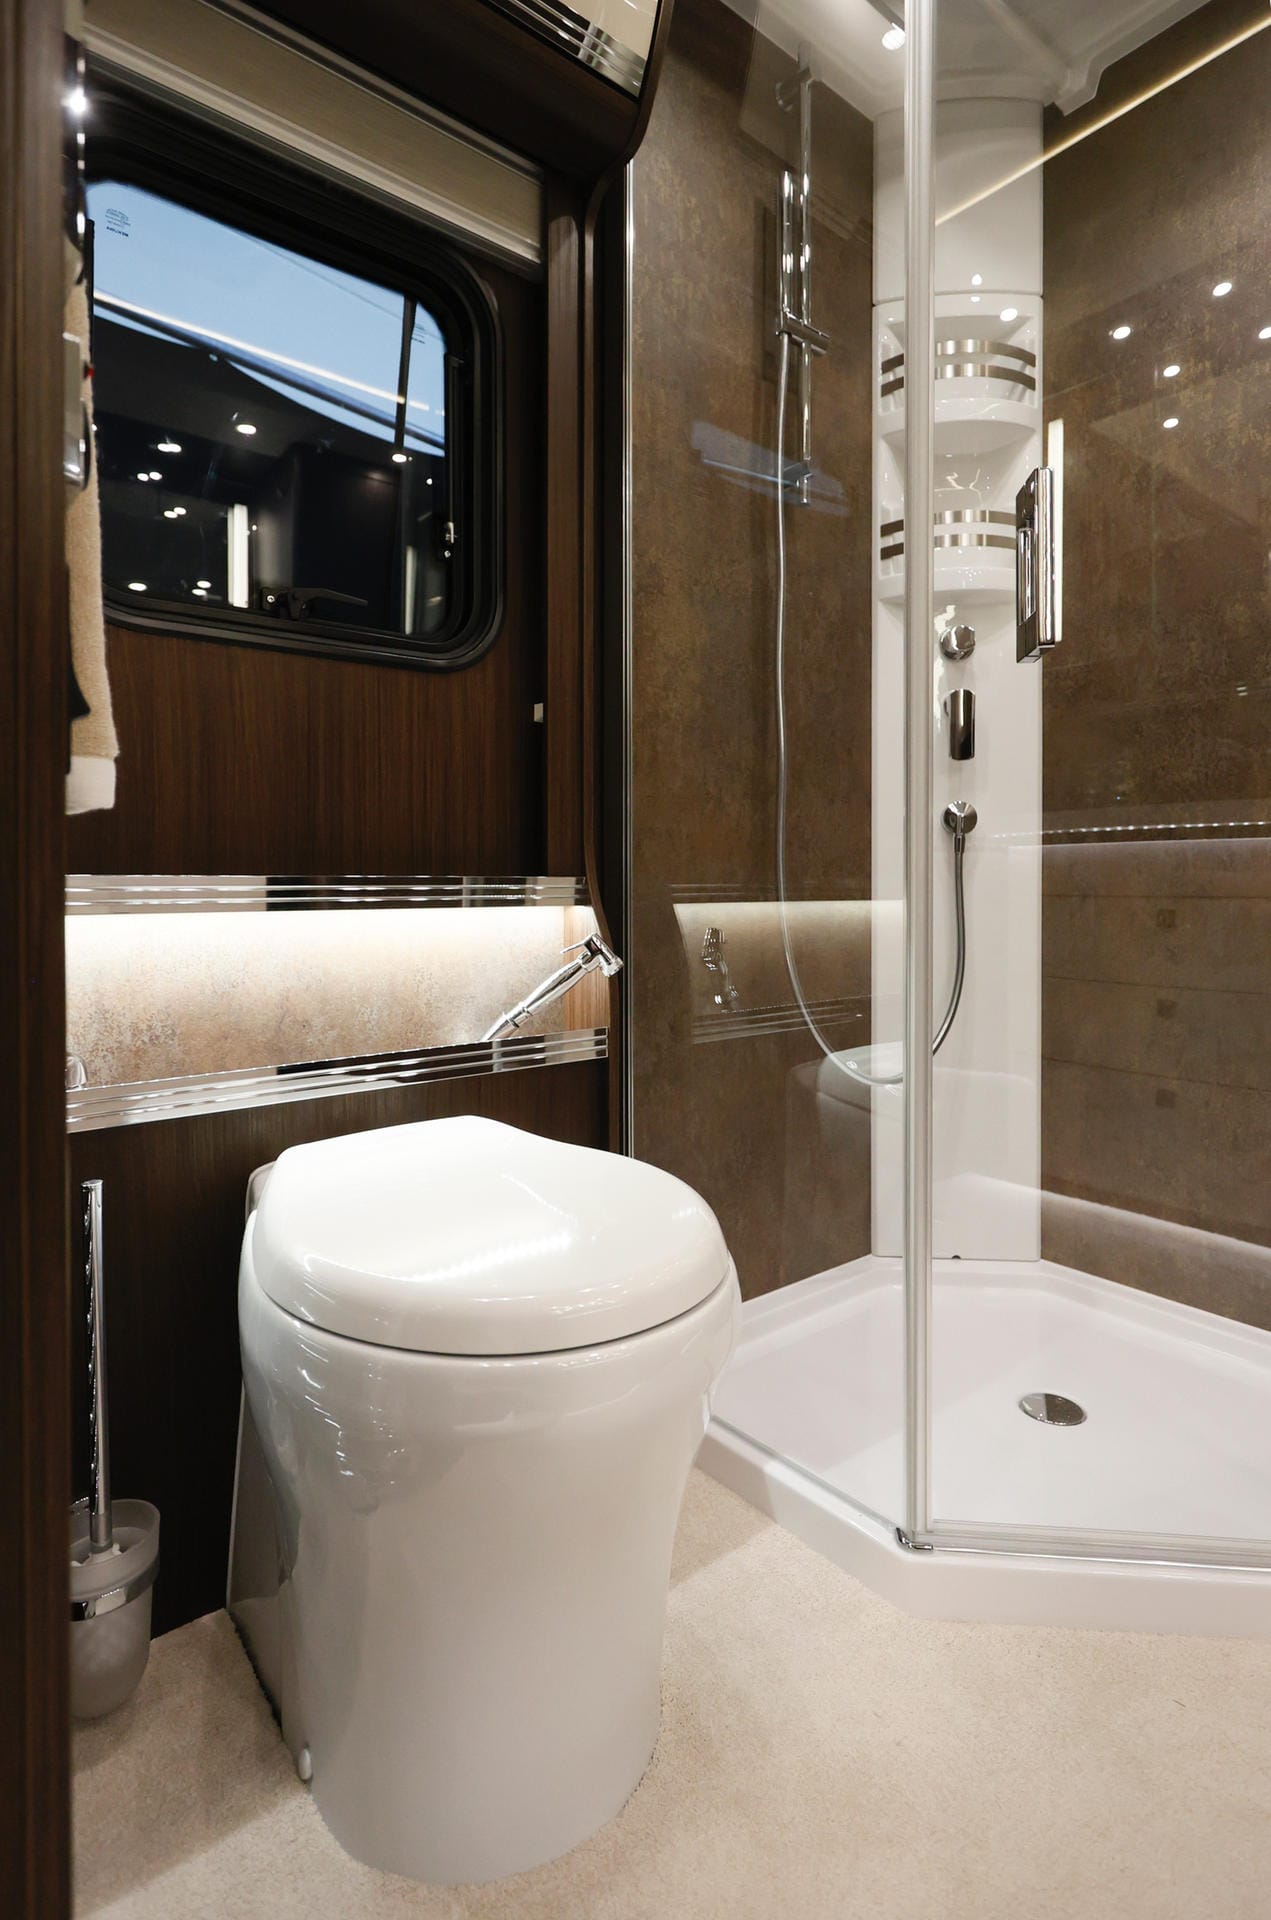 Im Sanitärbereich des Raumbades gibt es eine geräumige Rainshower-Dusche und eine Keramik-Toilette.